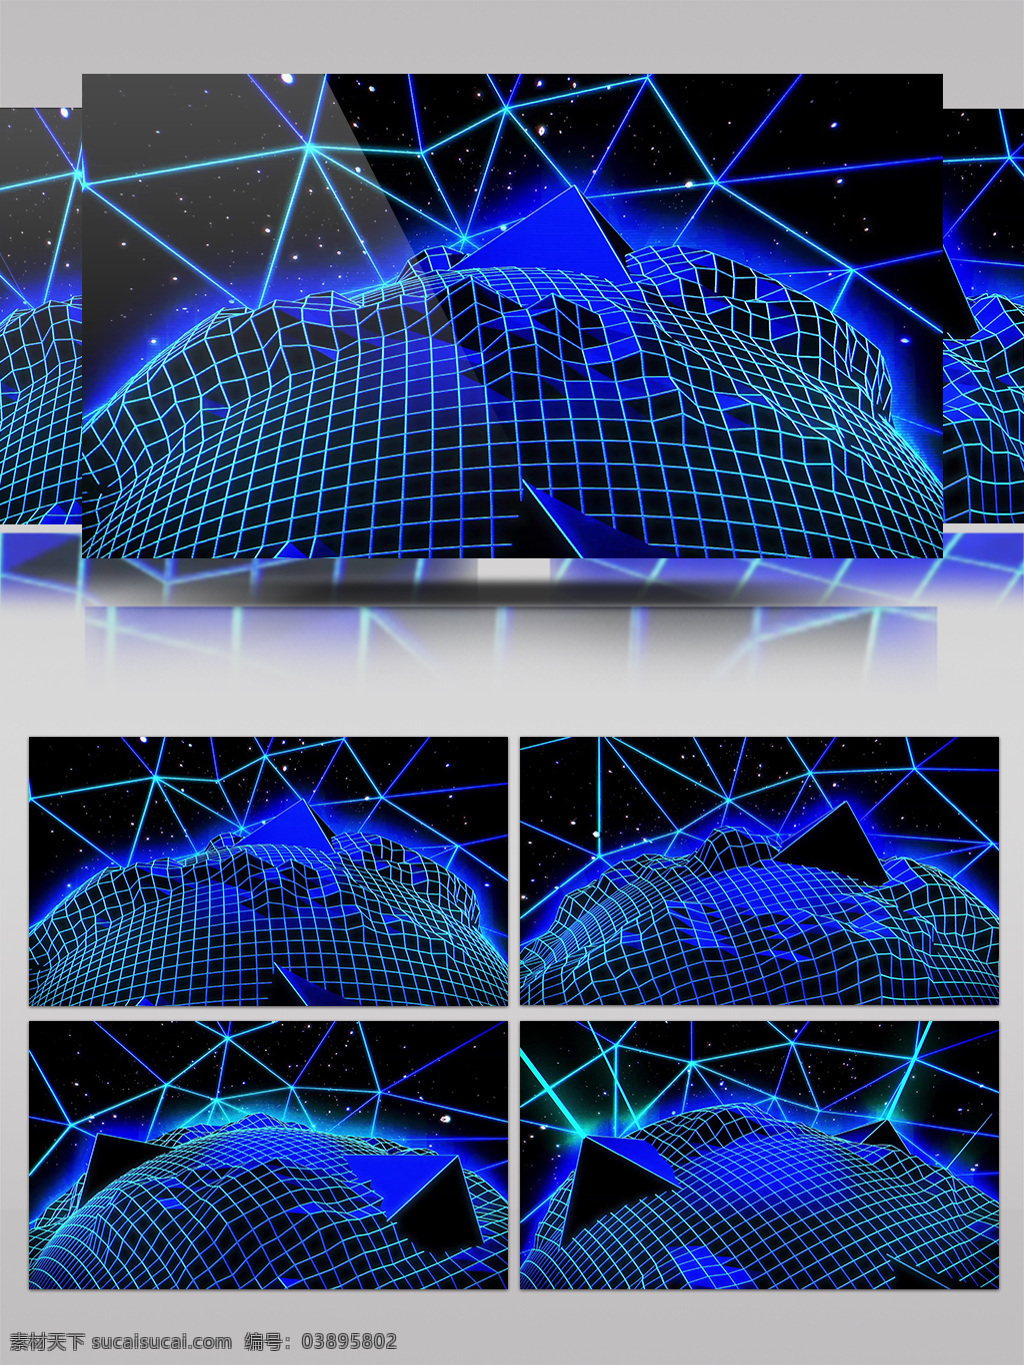 蓝色 地球 玩 视频 蓝色网格 线条网格 简约风格 低雅大气 广告商业 生活创意 创意设计 3d视频素材 特效视频素材